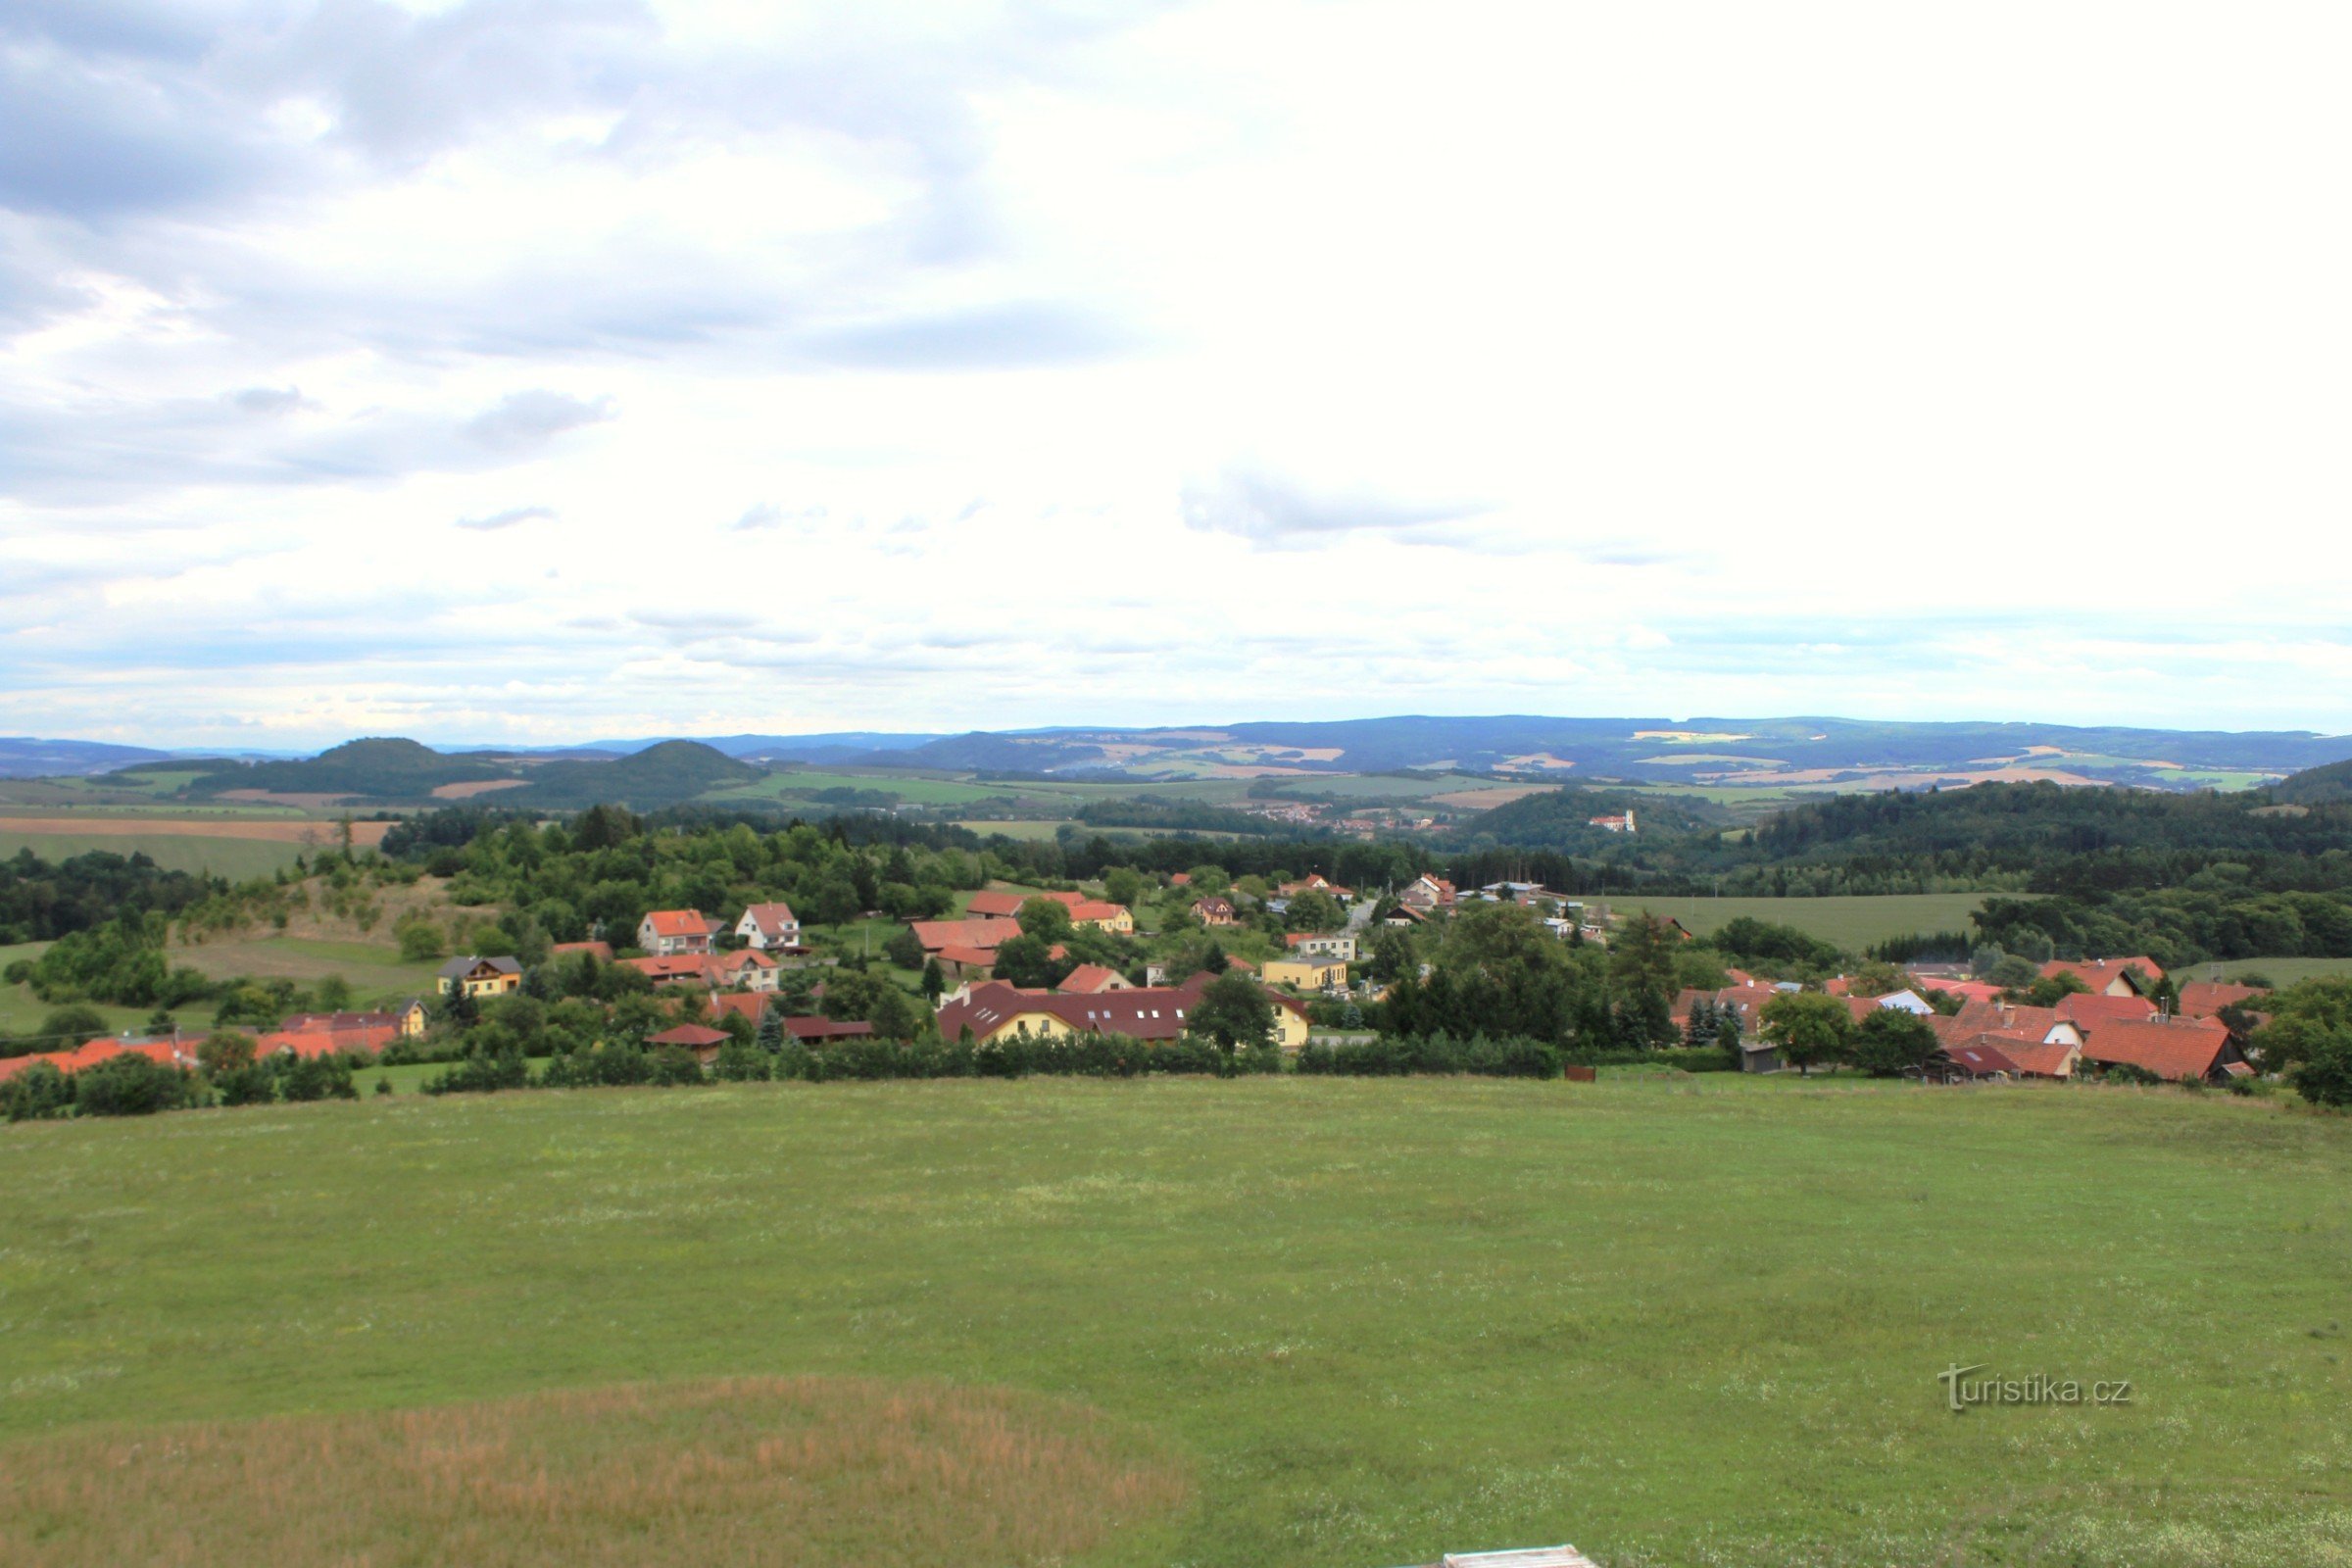 Žernovník の村から Drahanská vrchovina までの眺め